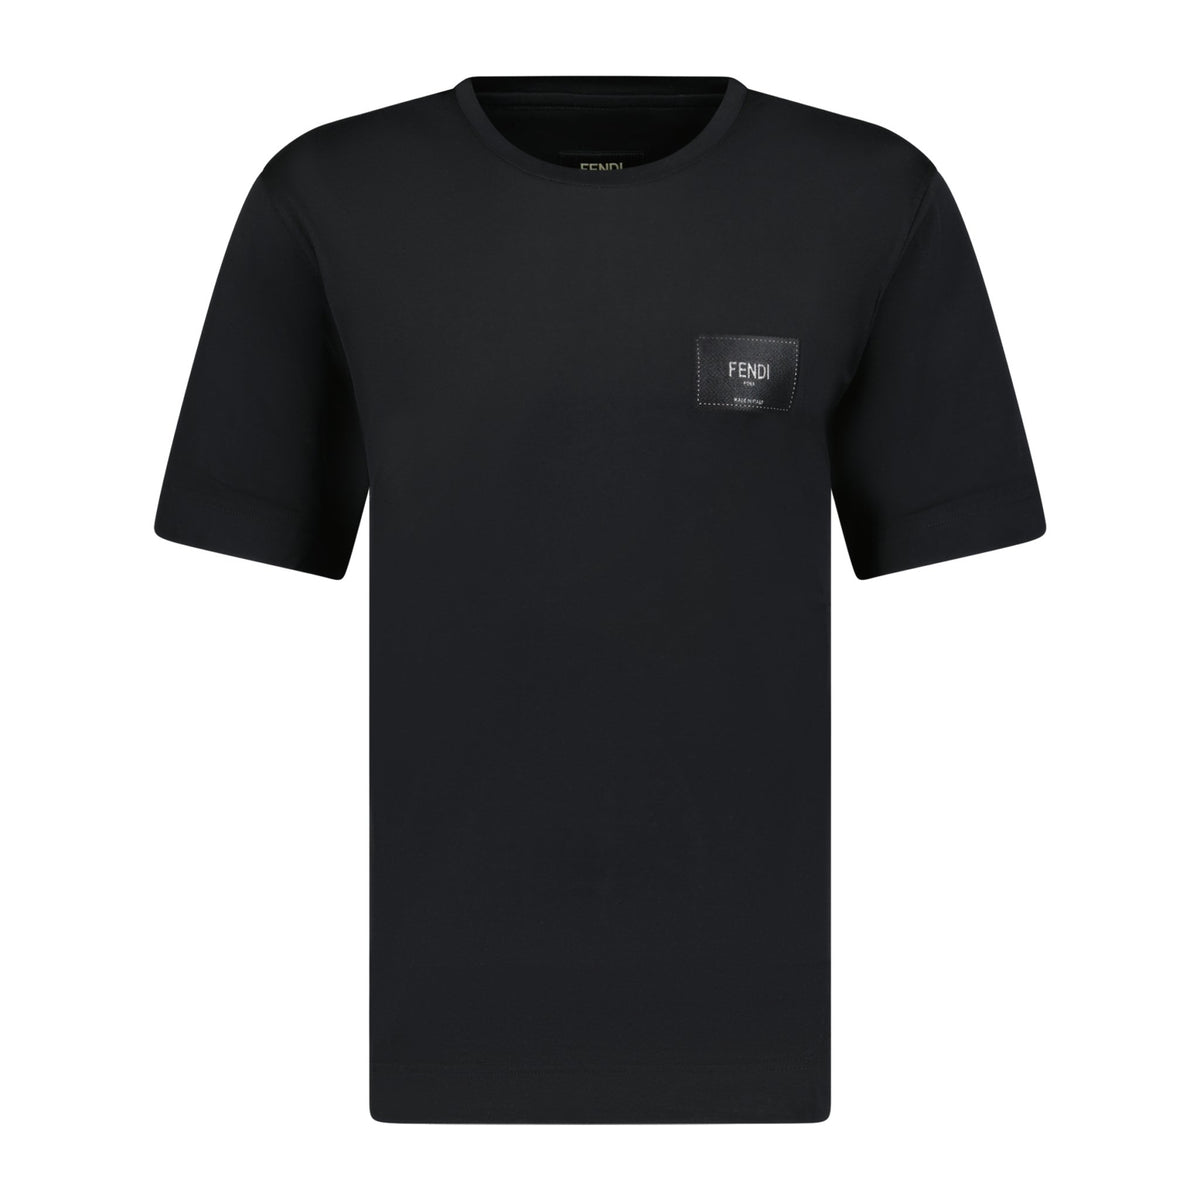 Fendi Label Patch T-Shirt Black | Boinclo ltd | Outlet Sale